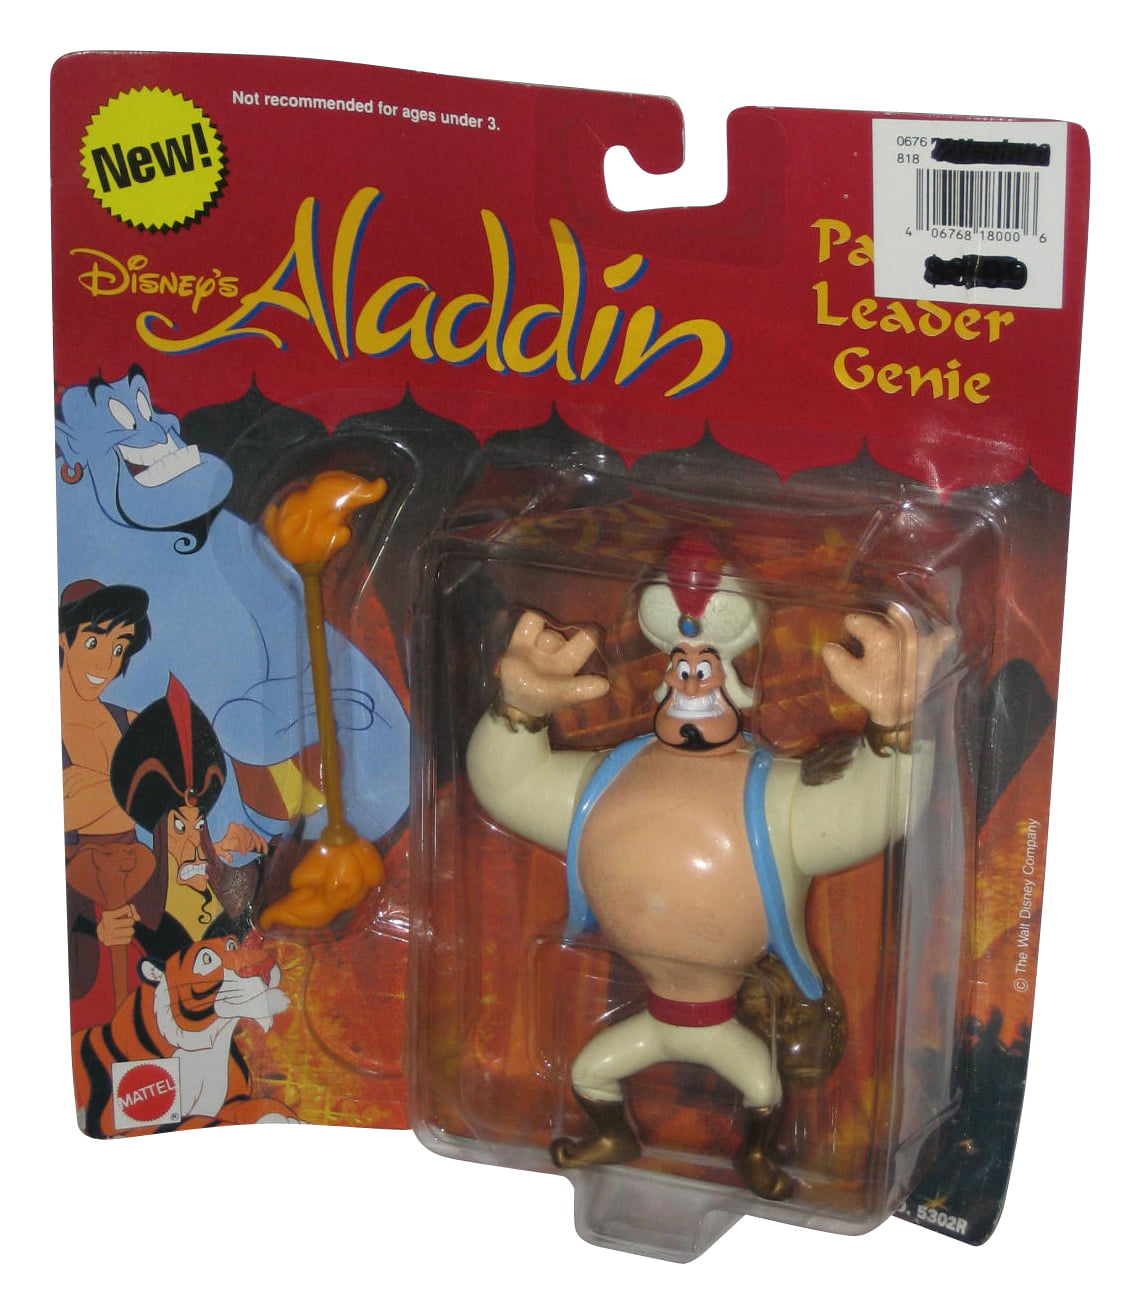 Disney's Aladdin figure by BULLYLAND 12472 Genie 